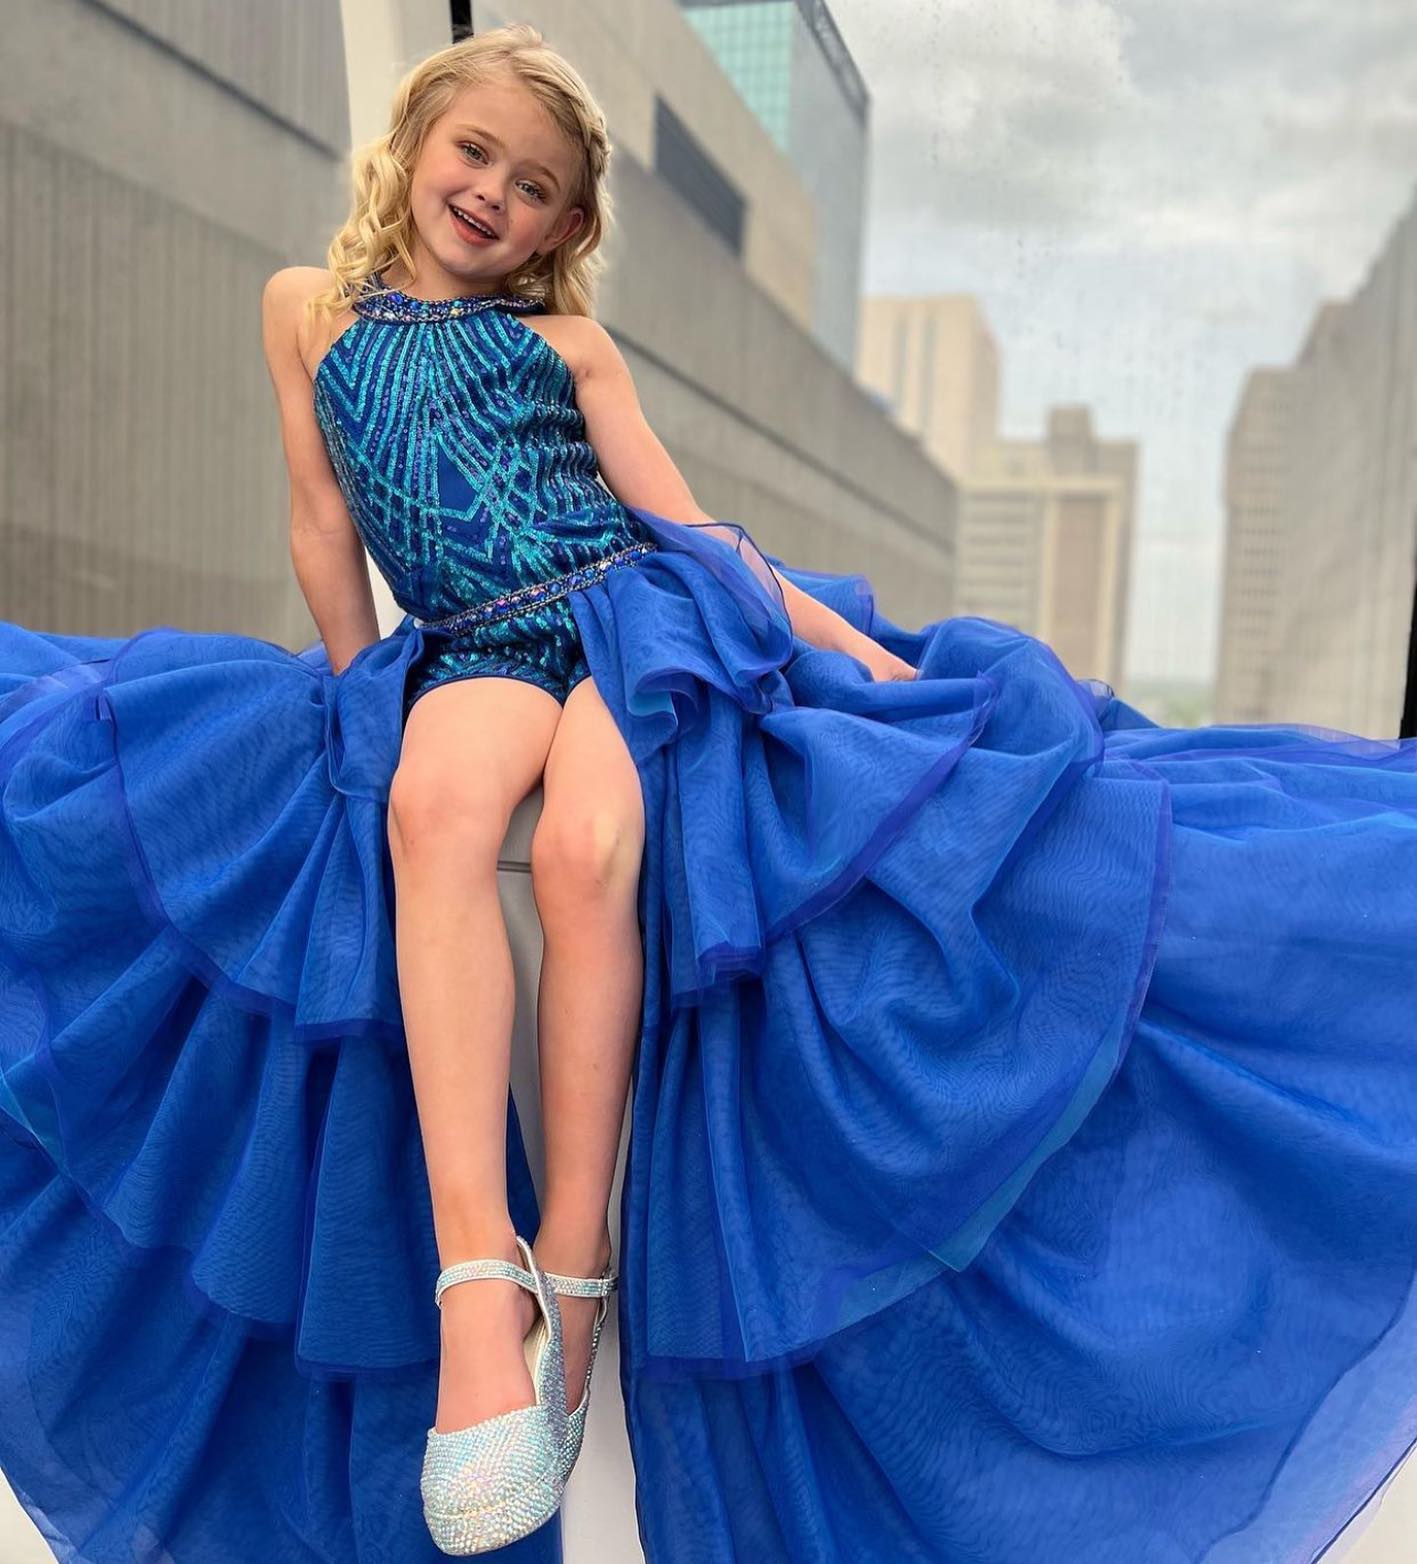 Kraliyet Mavisi Kız Yarışması Elbisesi Tulum 2023 Fırfırlı Etek Üstü Kristaller Payet Çocuk Romper Küçük Bayan Doğum Günü Resmi Parti Kokteyl Elbisesi Gençler Pist Fun-Moda 12